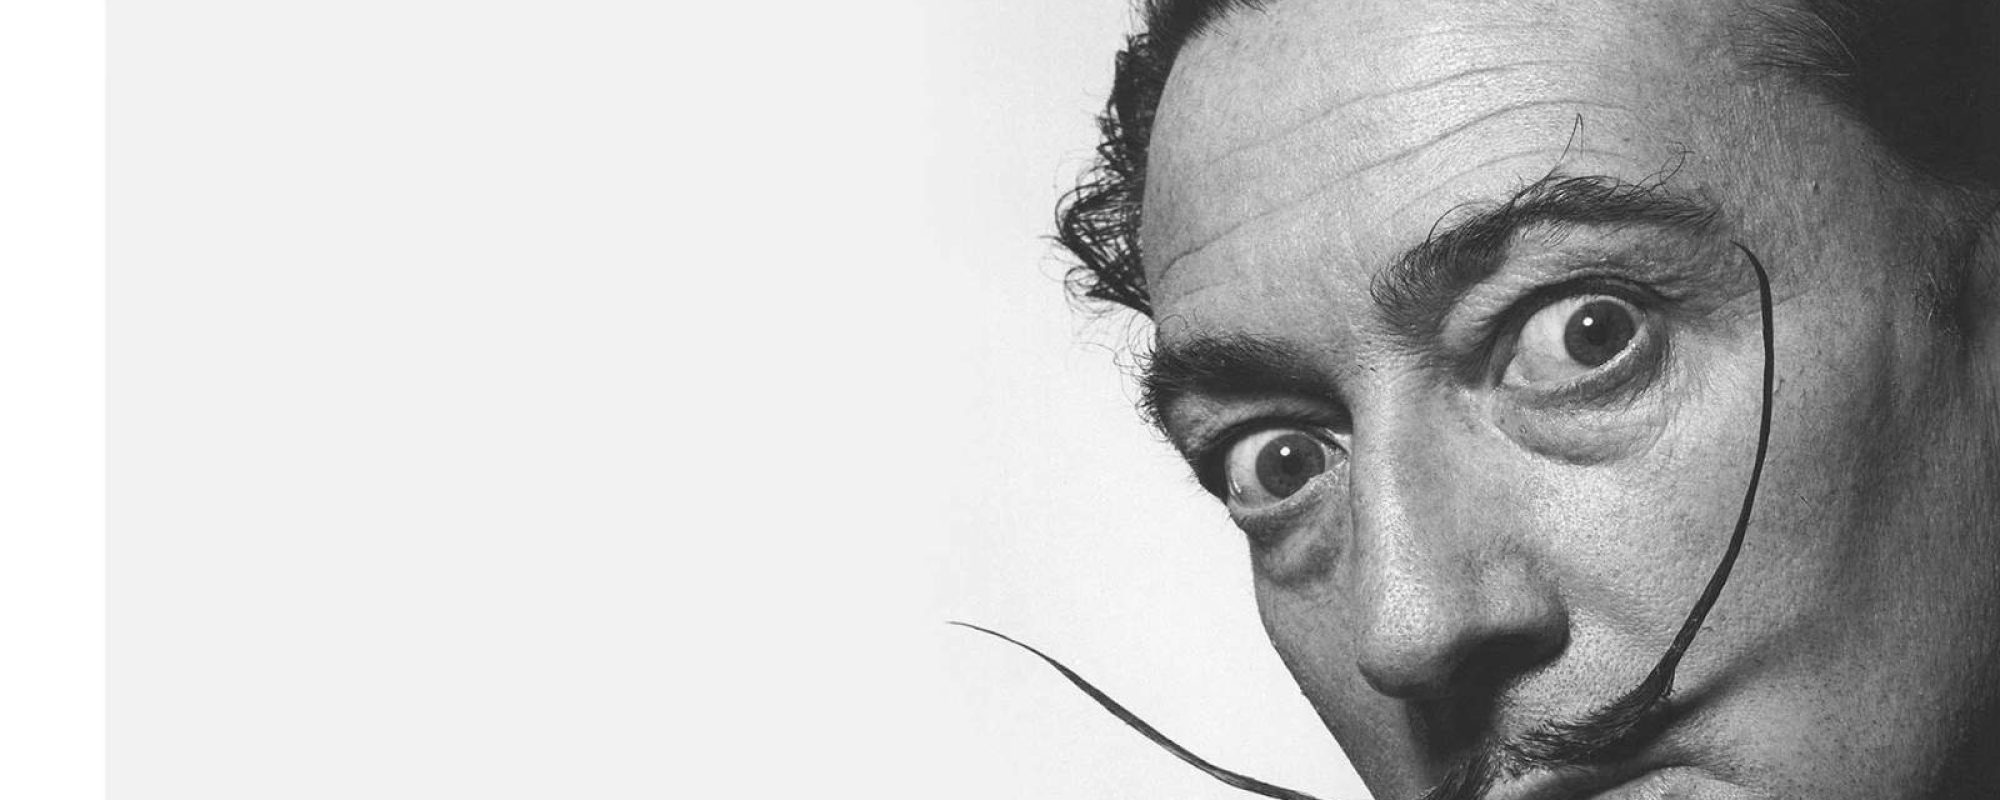 Artist Spotlight: Salvador Dalí